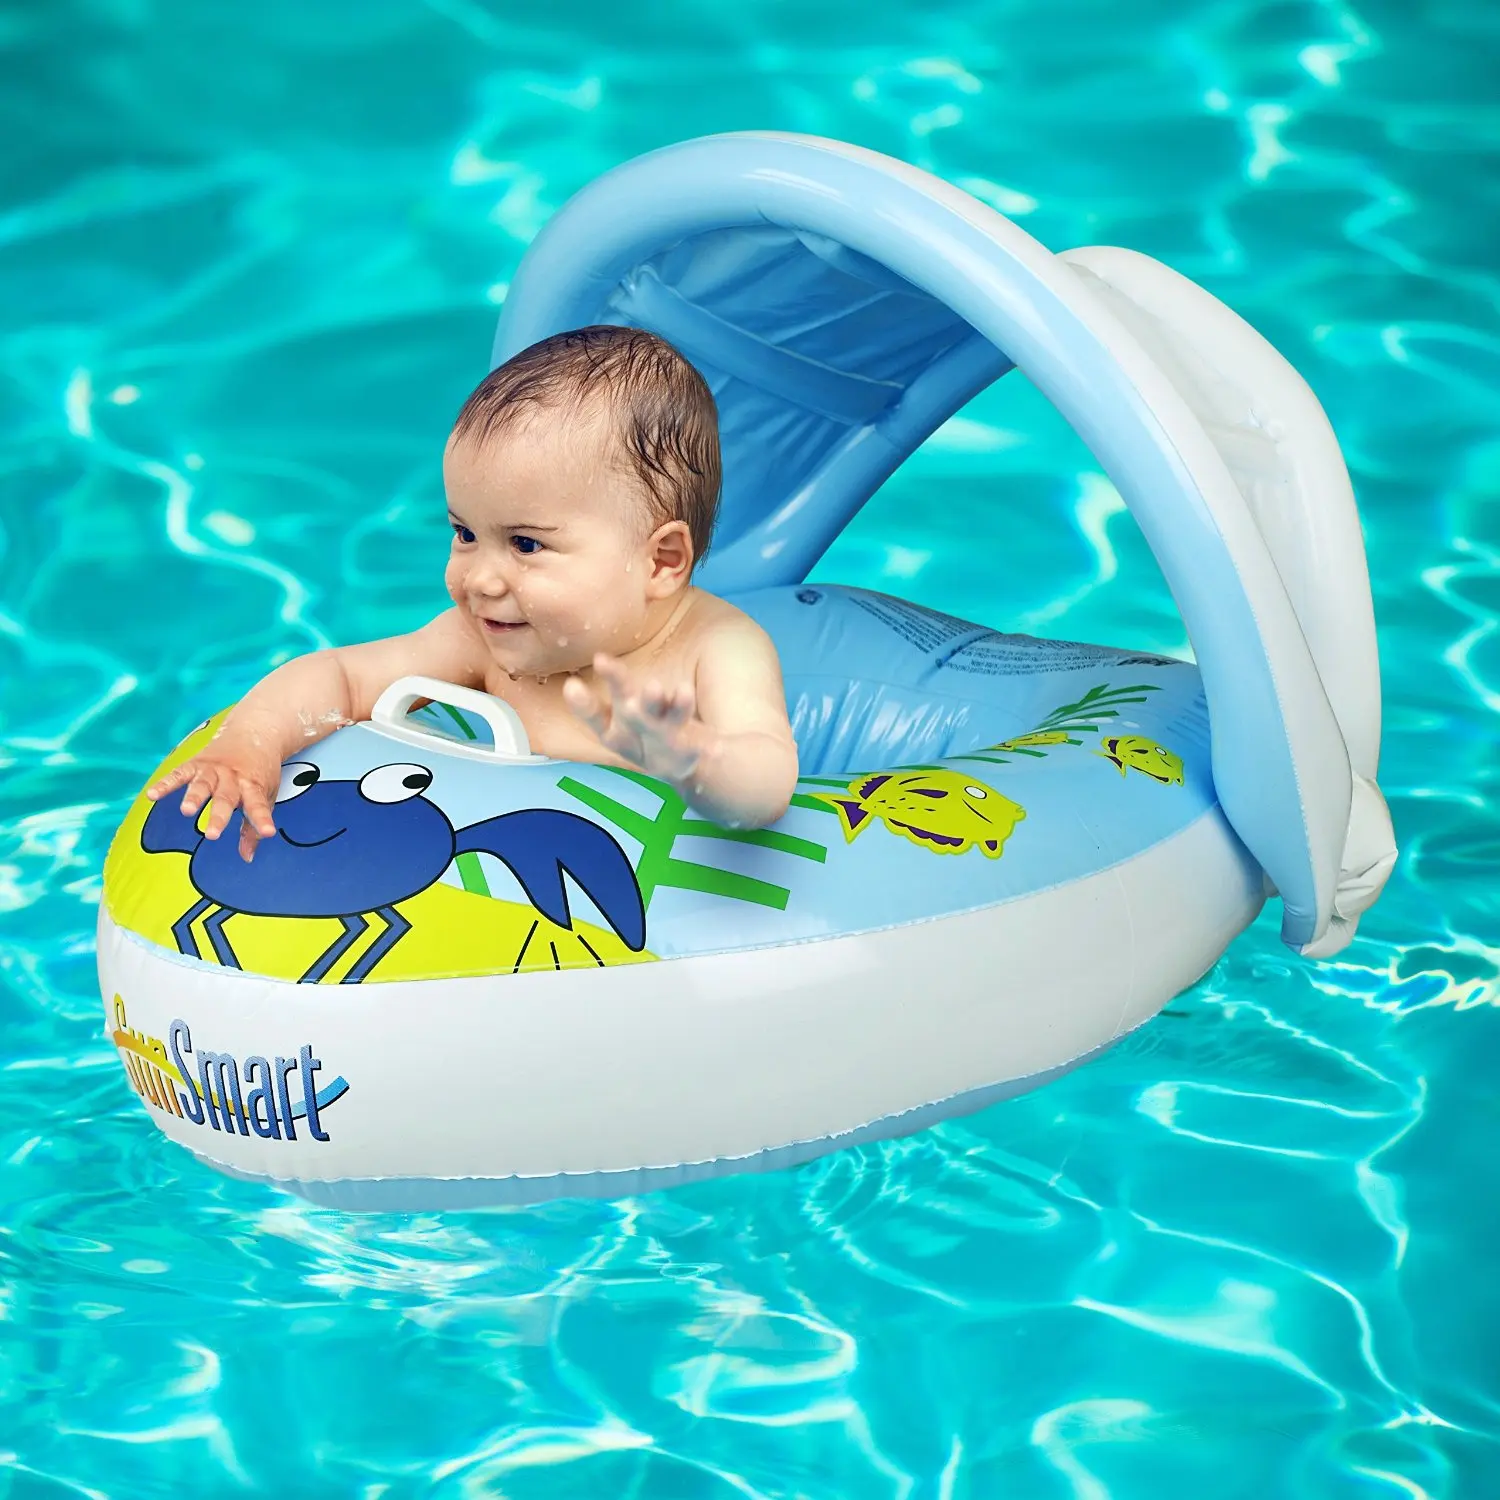 speedo baby float with canopy